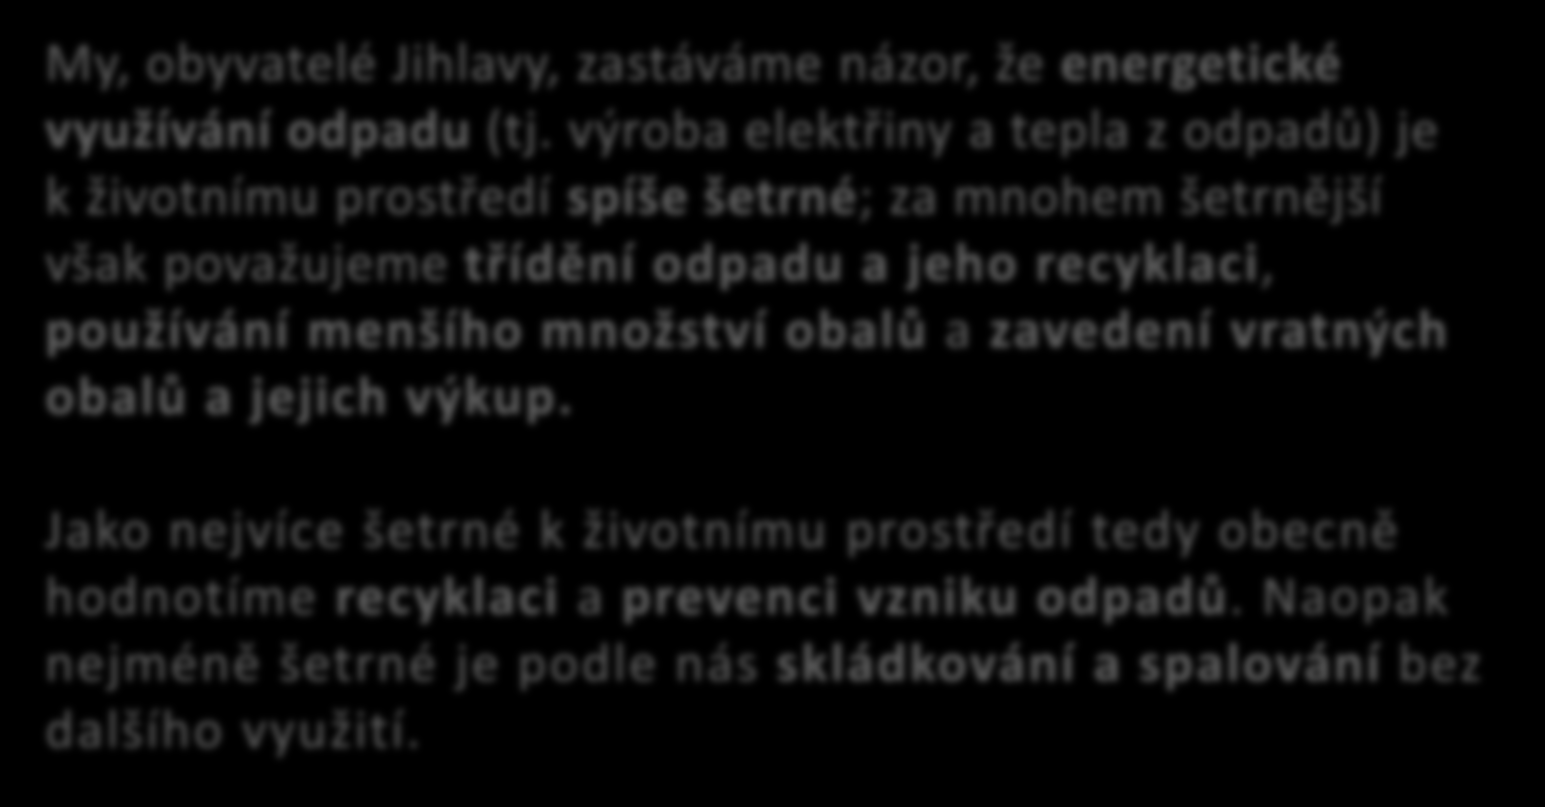 My, obyvatelé Jihlavy, zastáváme názor, že energetické využívání odpadu (tj.